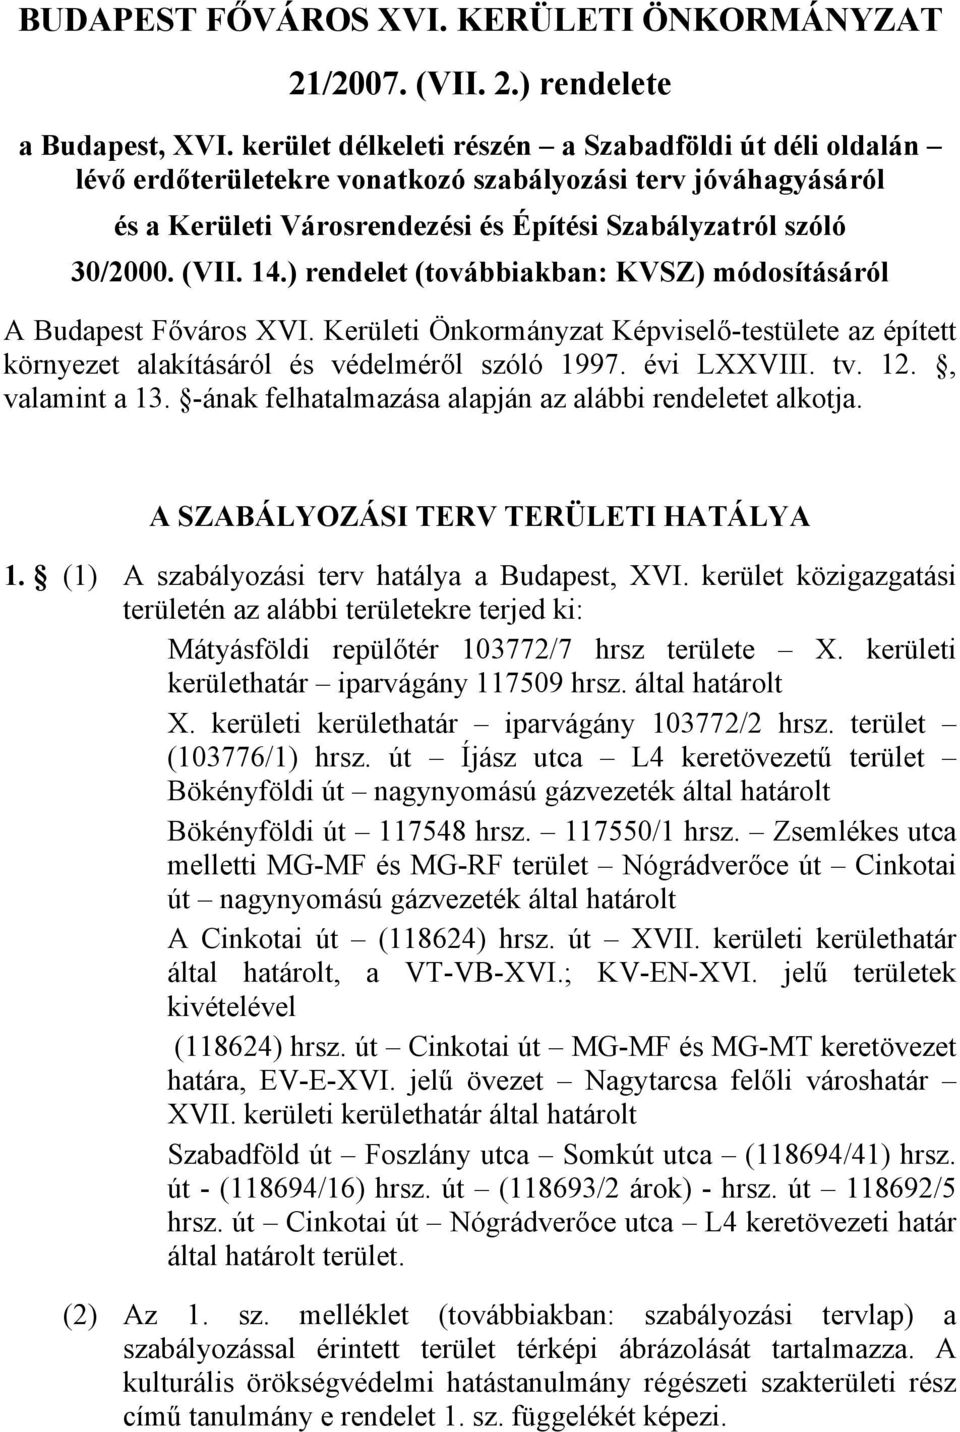 ) rendelet (továbbiakban: KVSZ) módosításáról A Budapest Főváros XVI. Kerületi Önkormányzat Képviselő-testülete az épített környezet alakításáról és védelméről szóló 1997. évi LXXVIII. tv. 12.